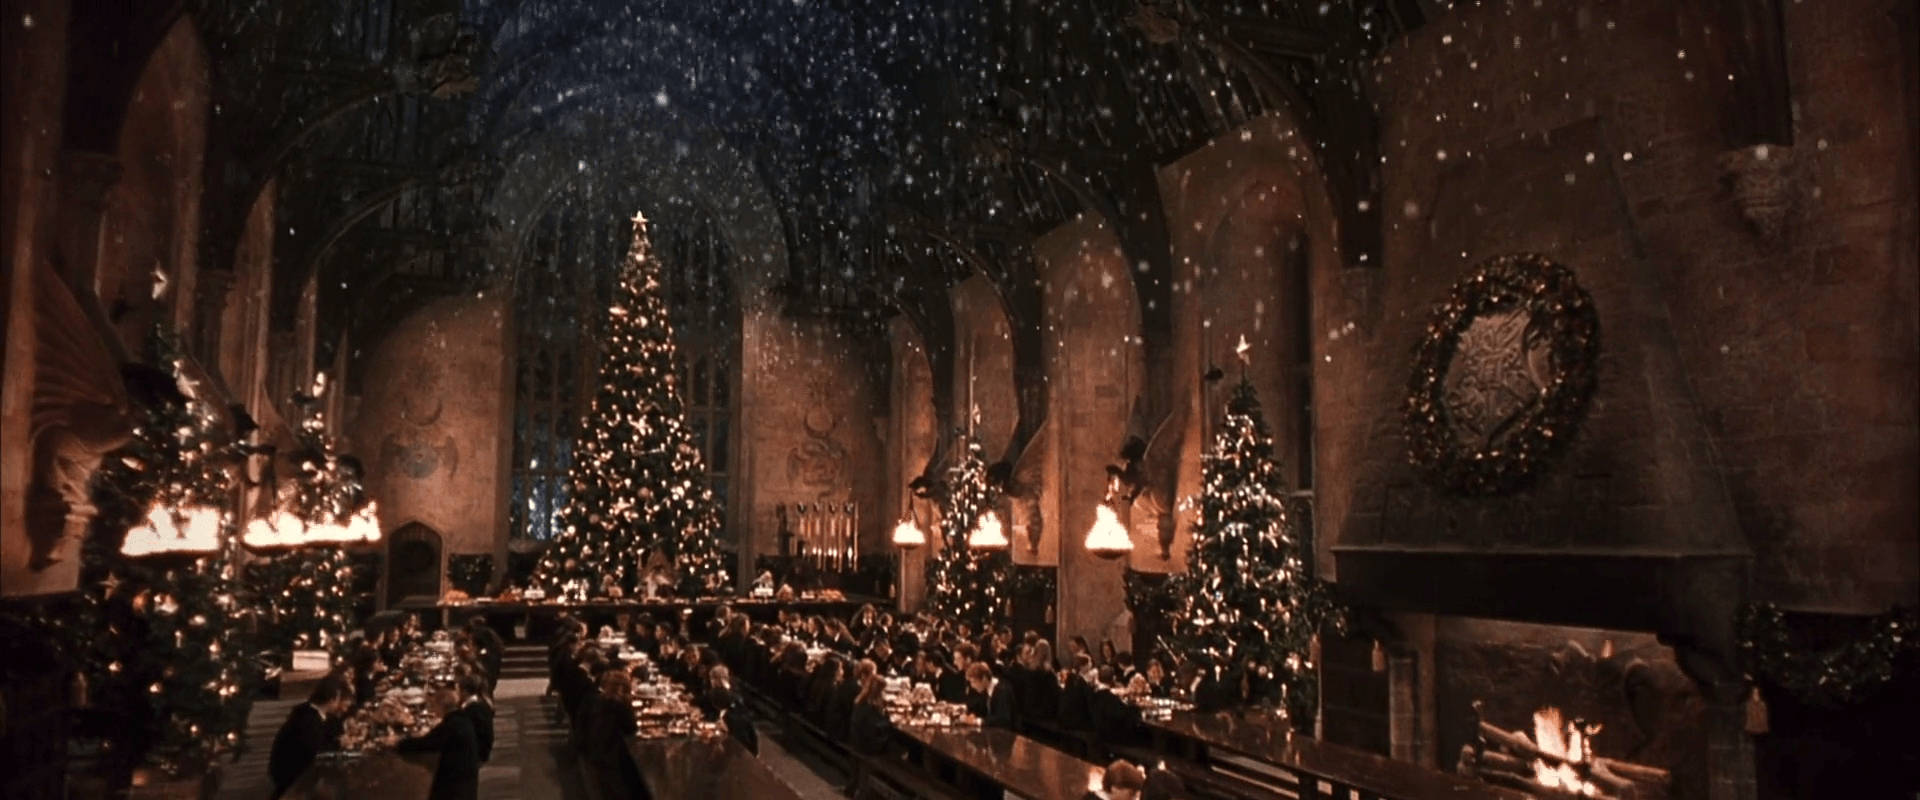 Christmas Aesthetic Desktop Harry Potter Wallpaper